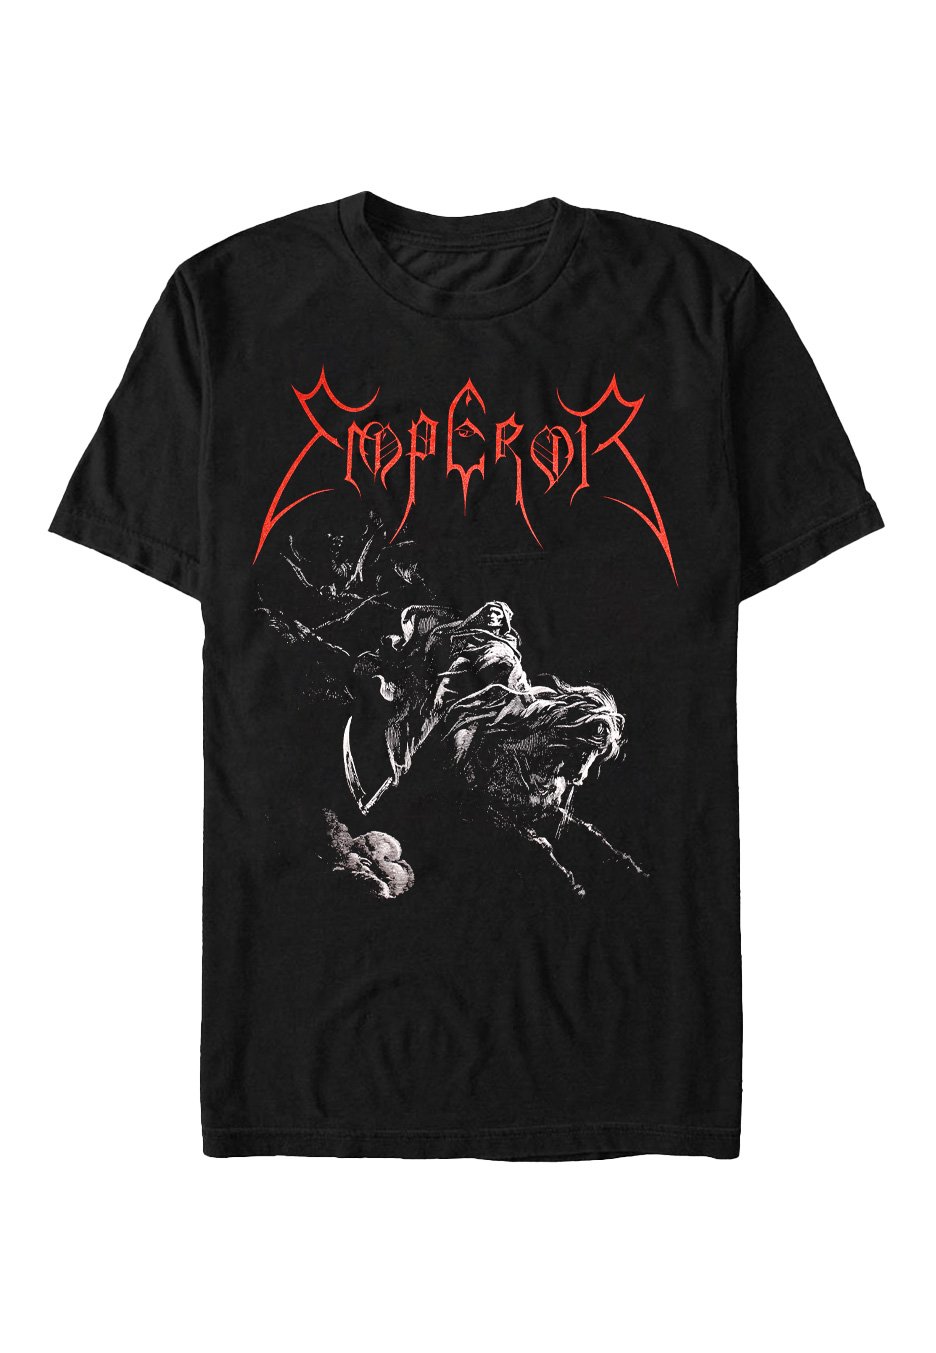 Emperor - Rider - T-Shirt